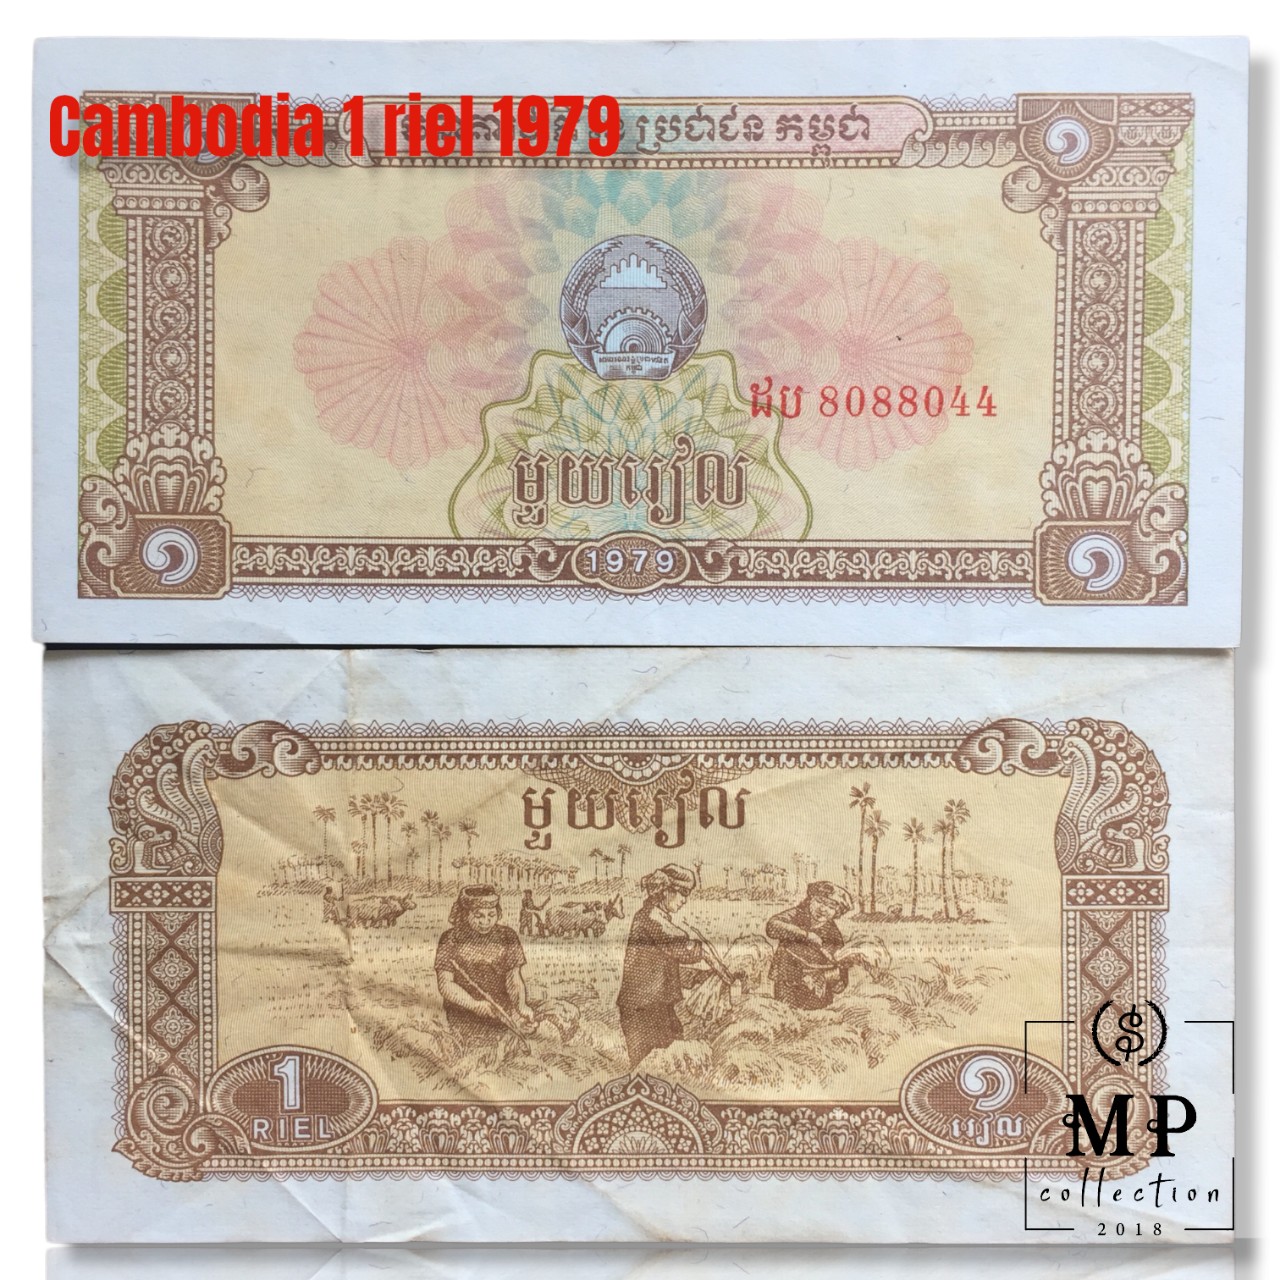 Tờ tiền xưa nước Cambodia mệnh giá 1 riel với hình ảnh người nông dân cày ruộng, gặt lúa.